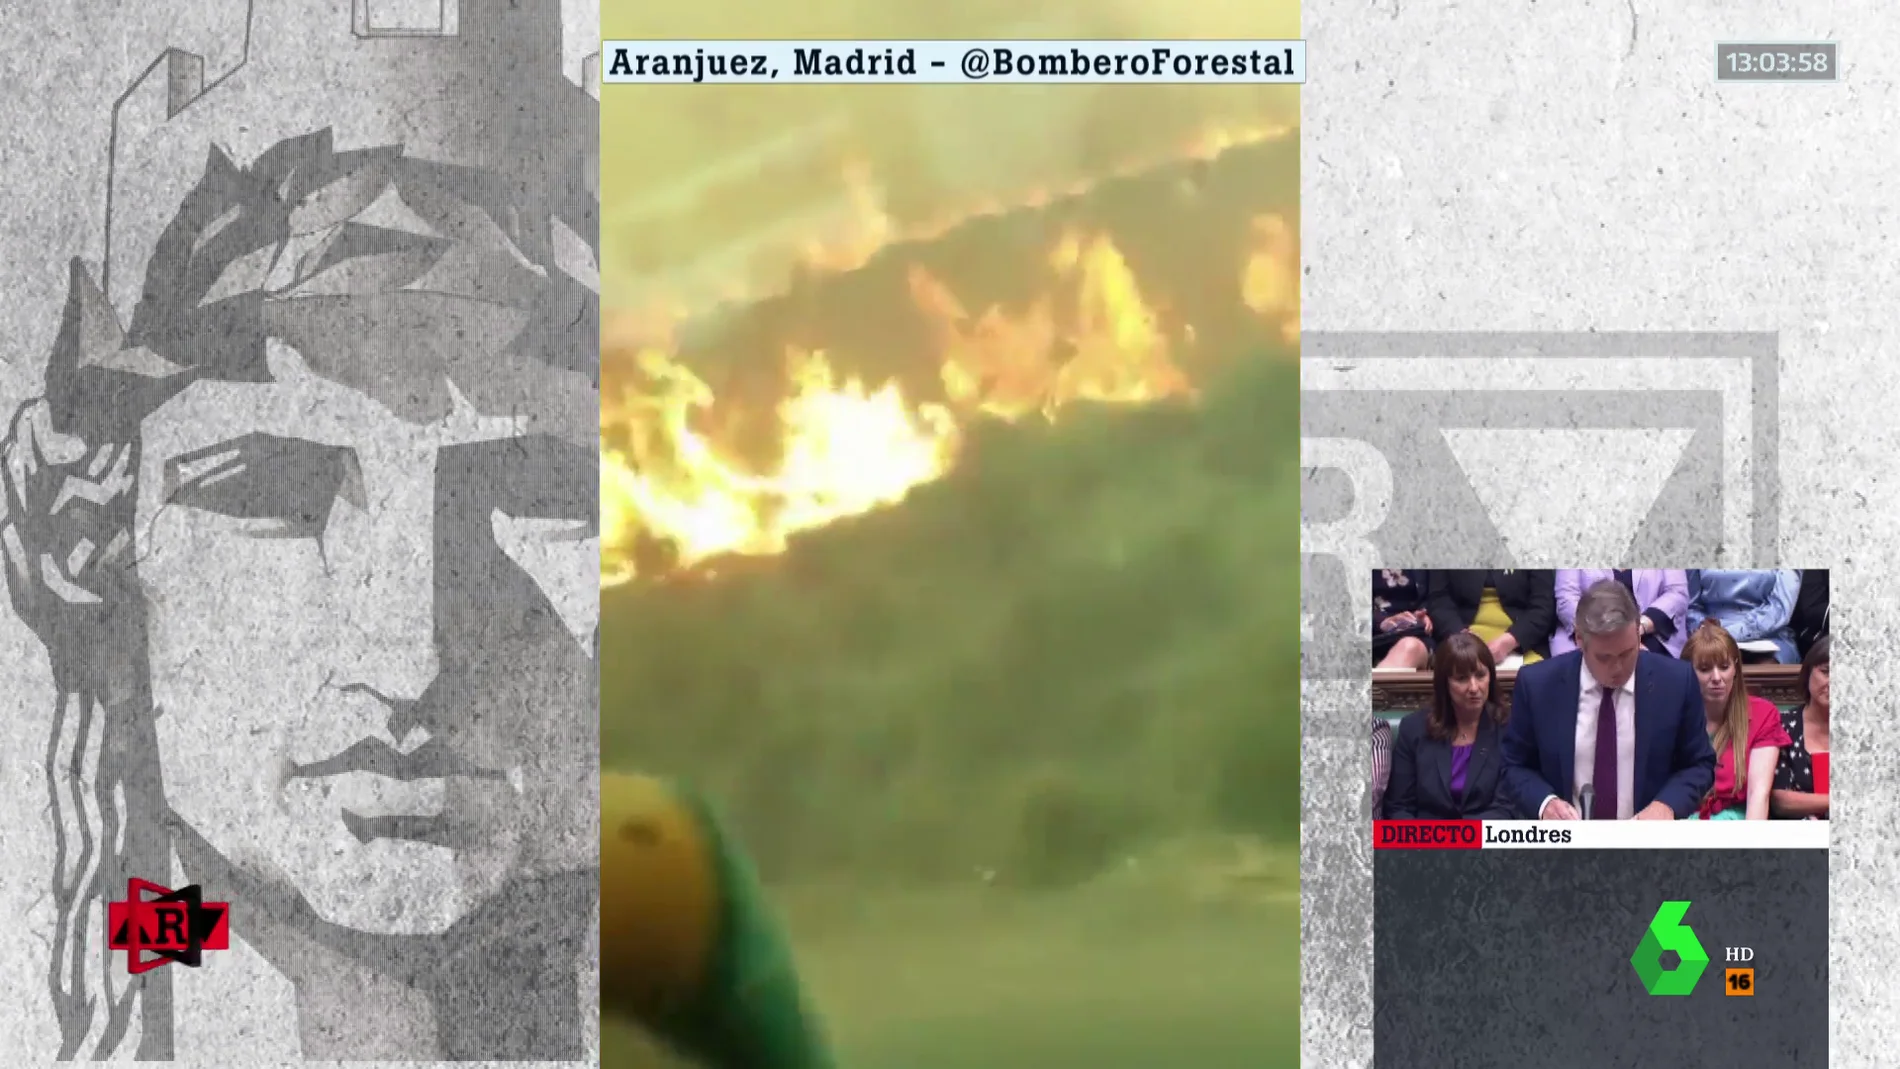 Pánico en un autobús que pasó entre las llamas del incendio de Aranjuez: "¡No se pare!"